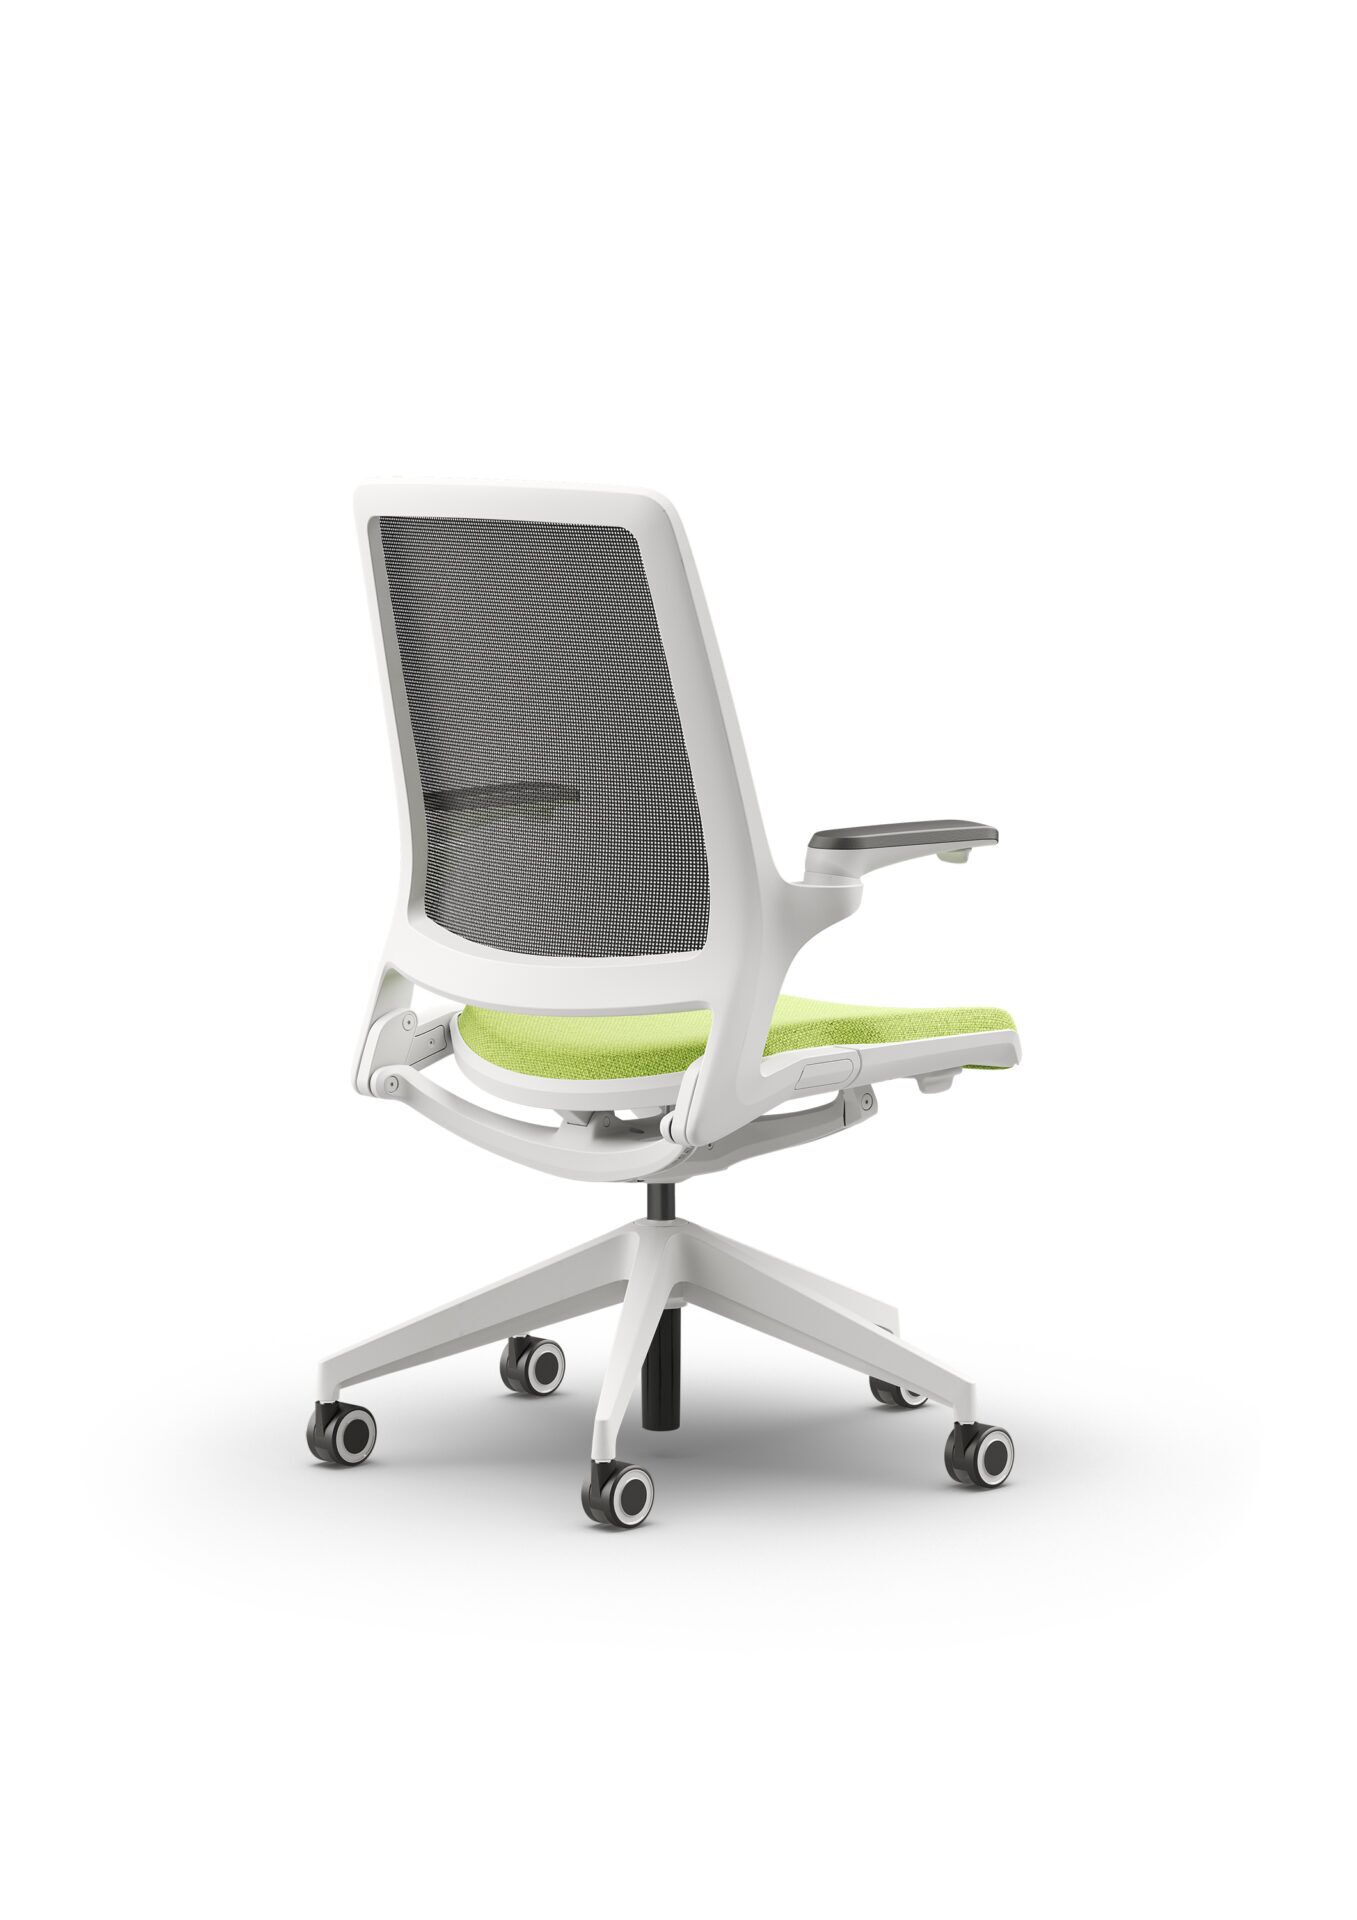 Biały fotel biurowy z zielonym siedzeniem Ob smart - widoczny po skosie od tyłu zdjęcie 4